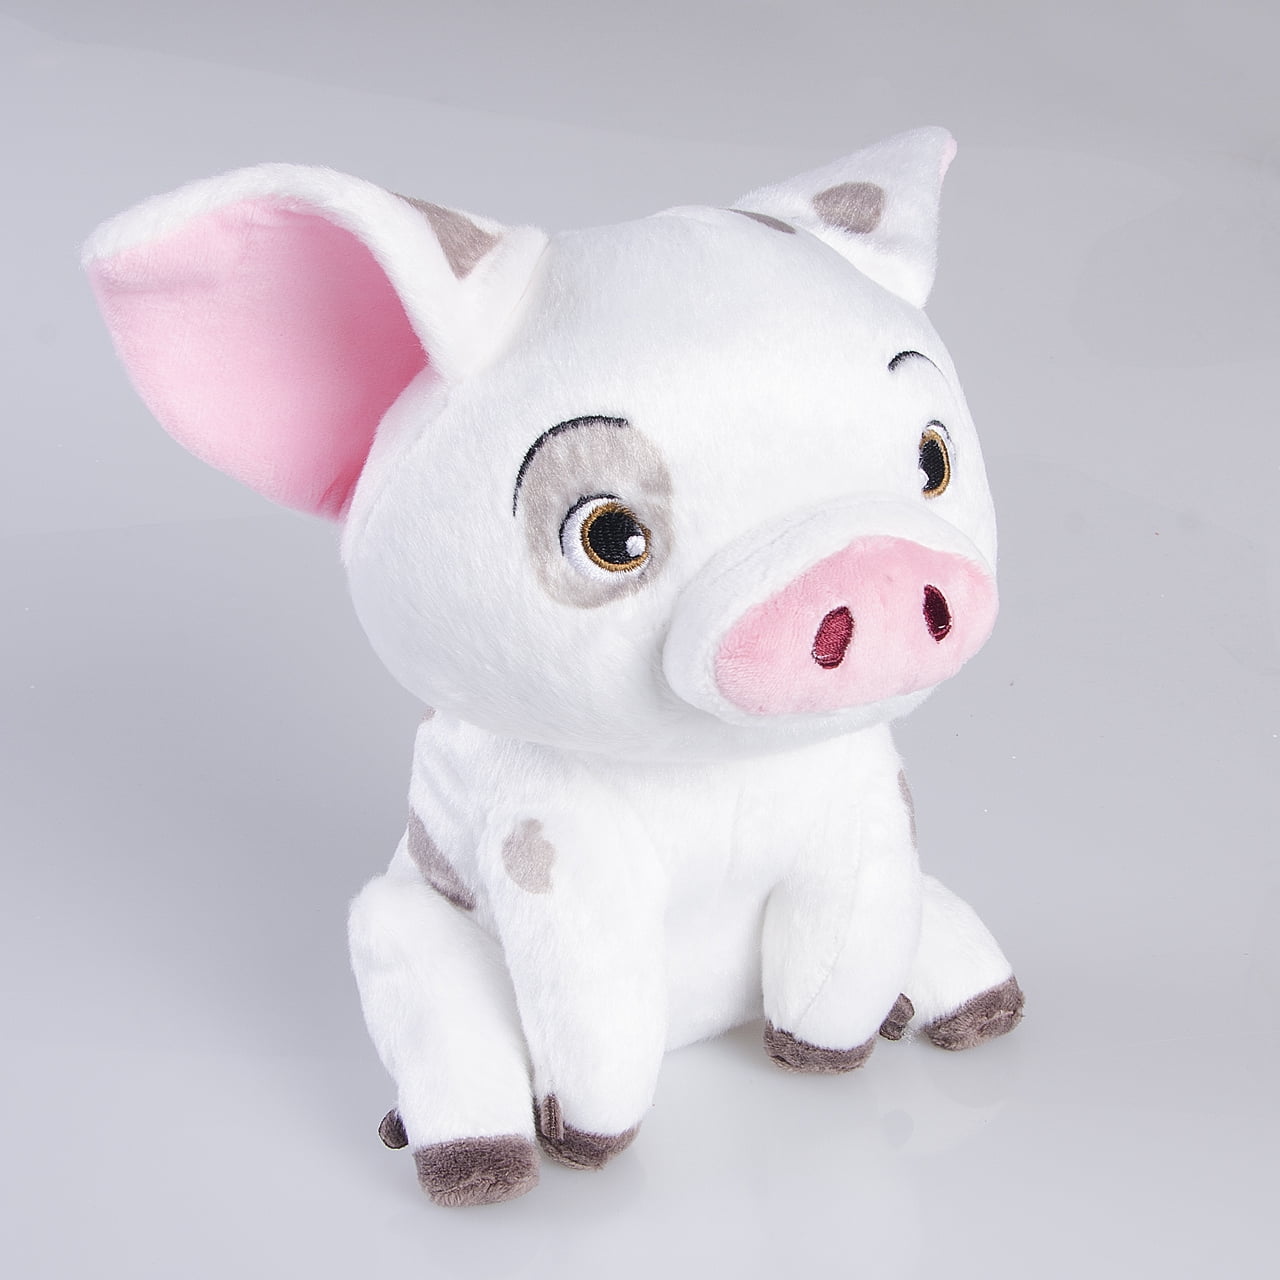 Moana Pet Pig Pua Super Soft Doll Stuffed Animal Plush Toy Kids Gift 9" 